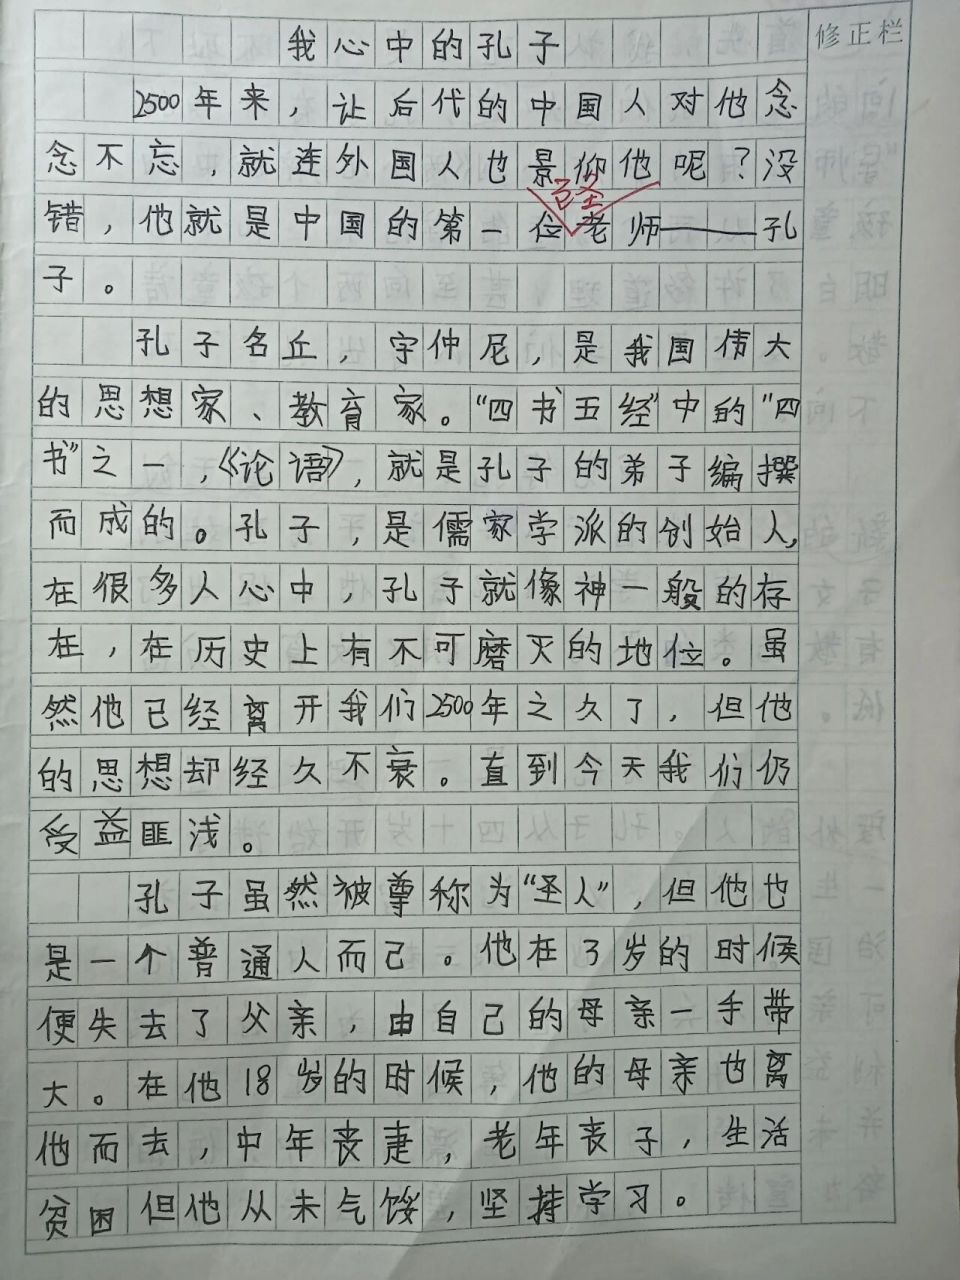 日记孔子公园700字图片